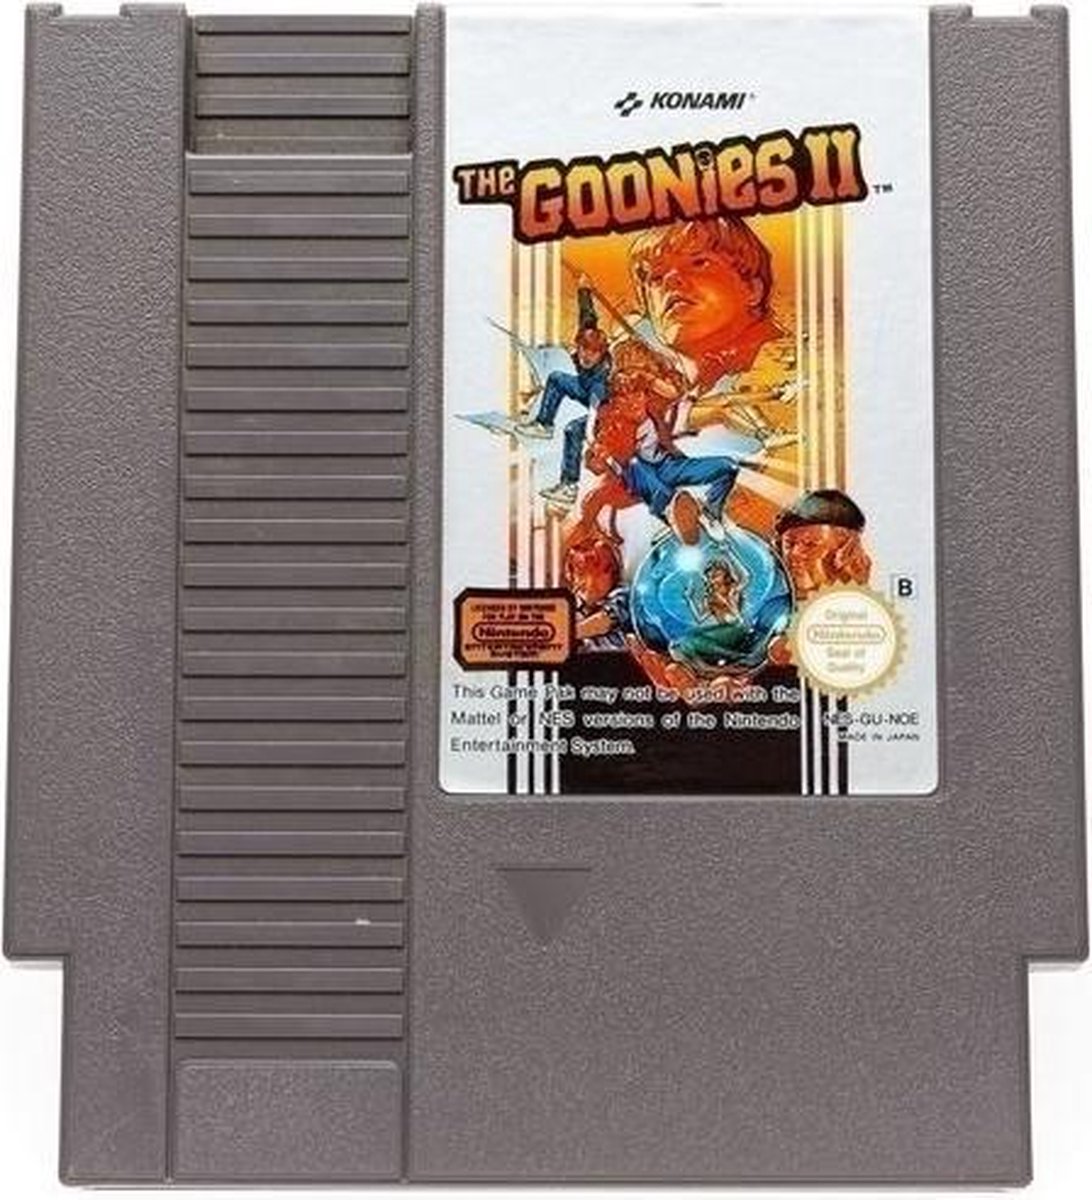 [NES] The Goonies II - Nintendo